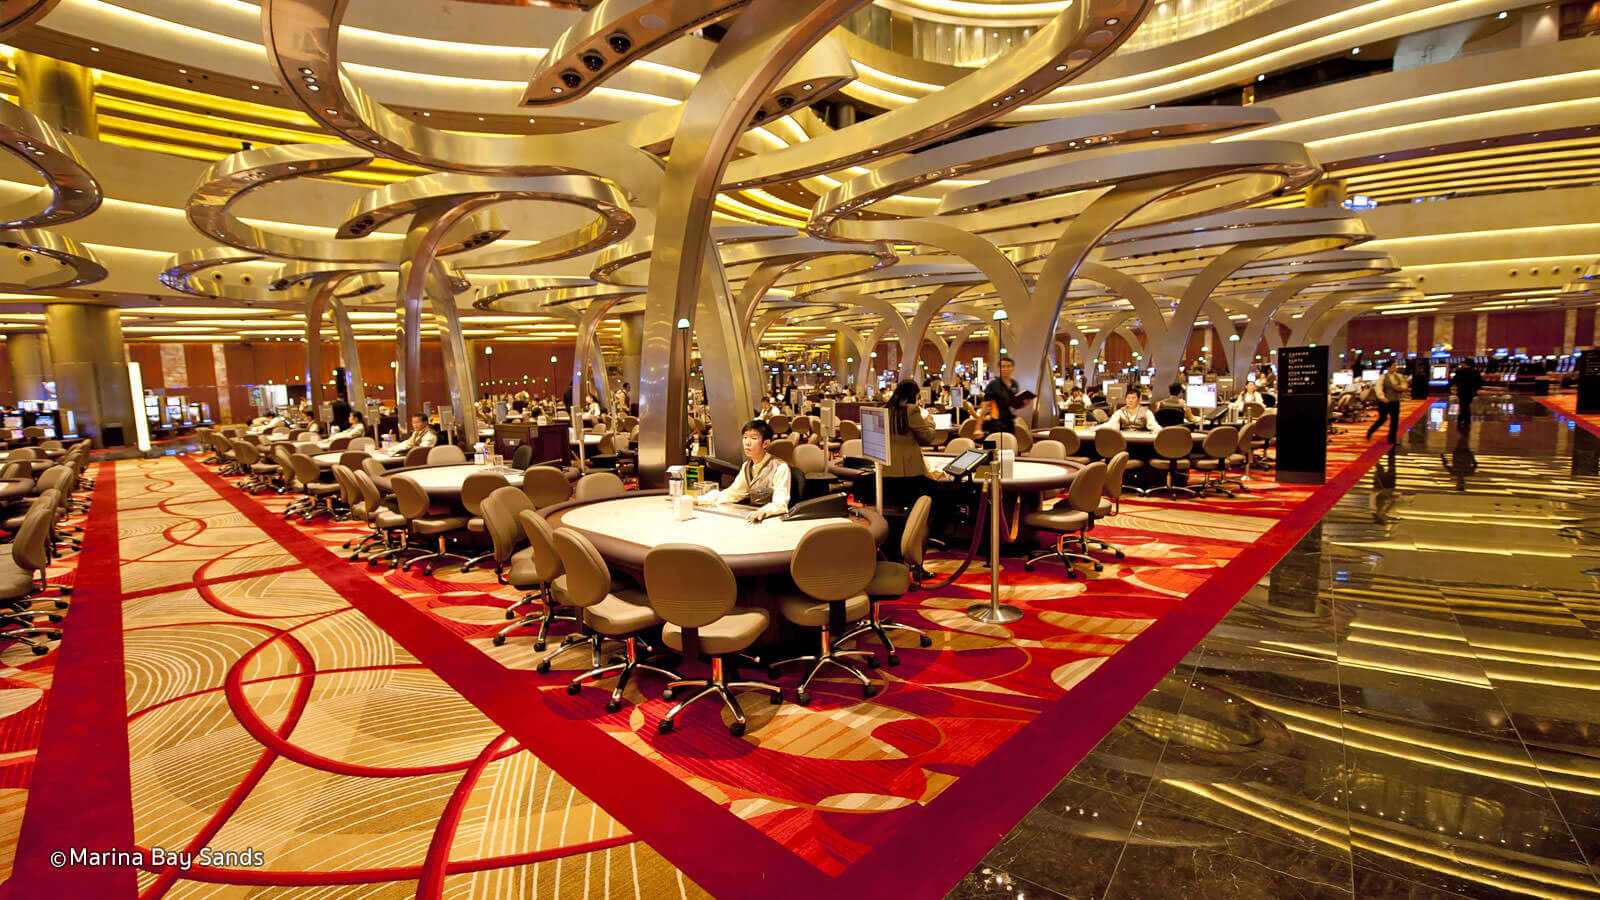 Casino interior design